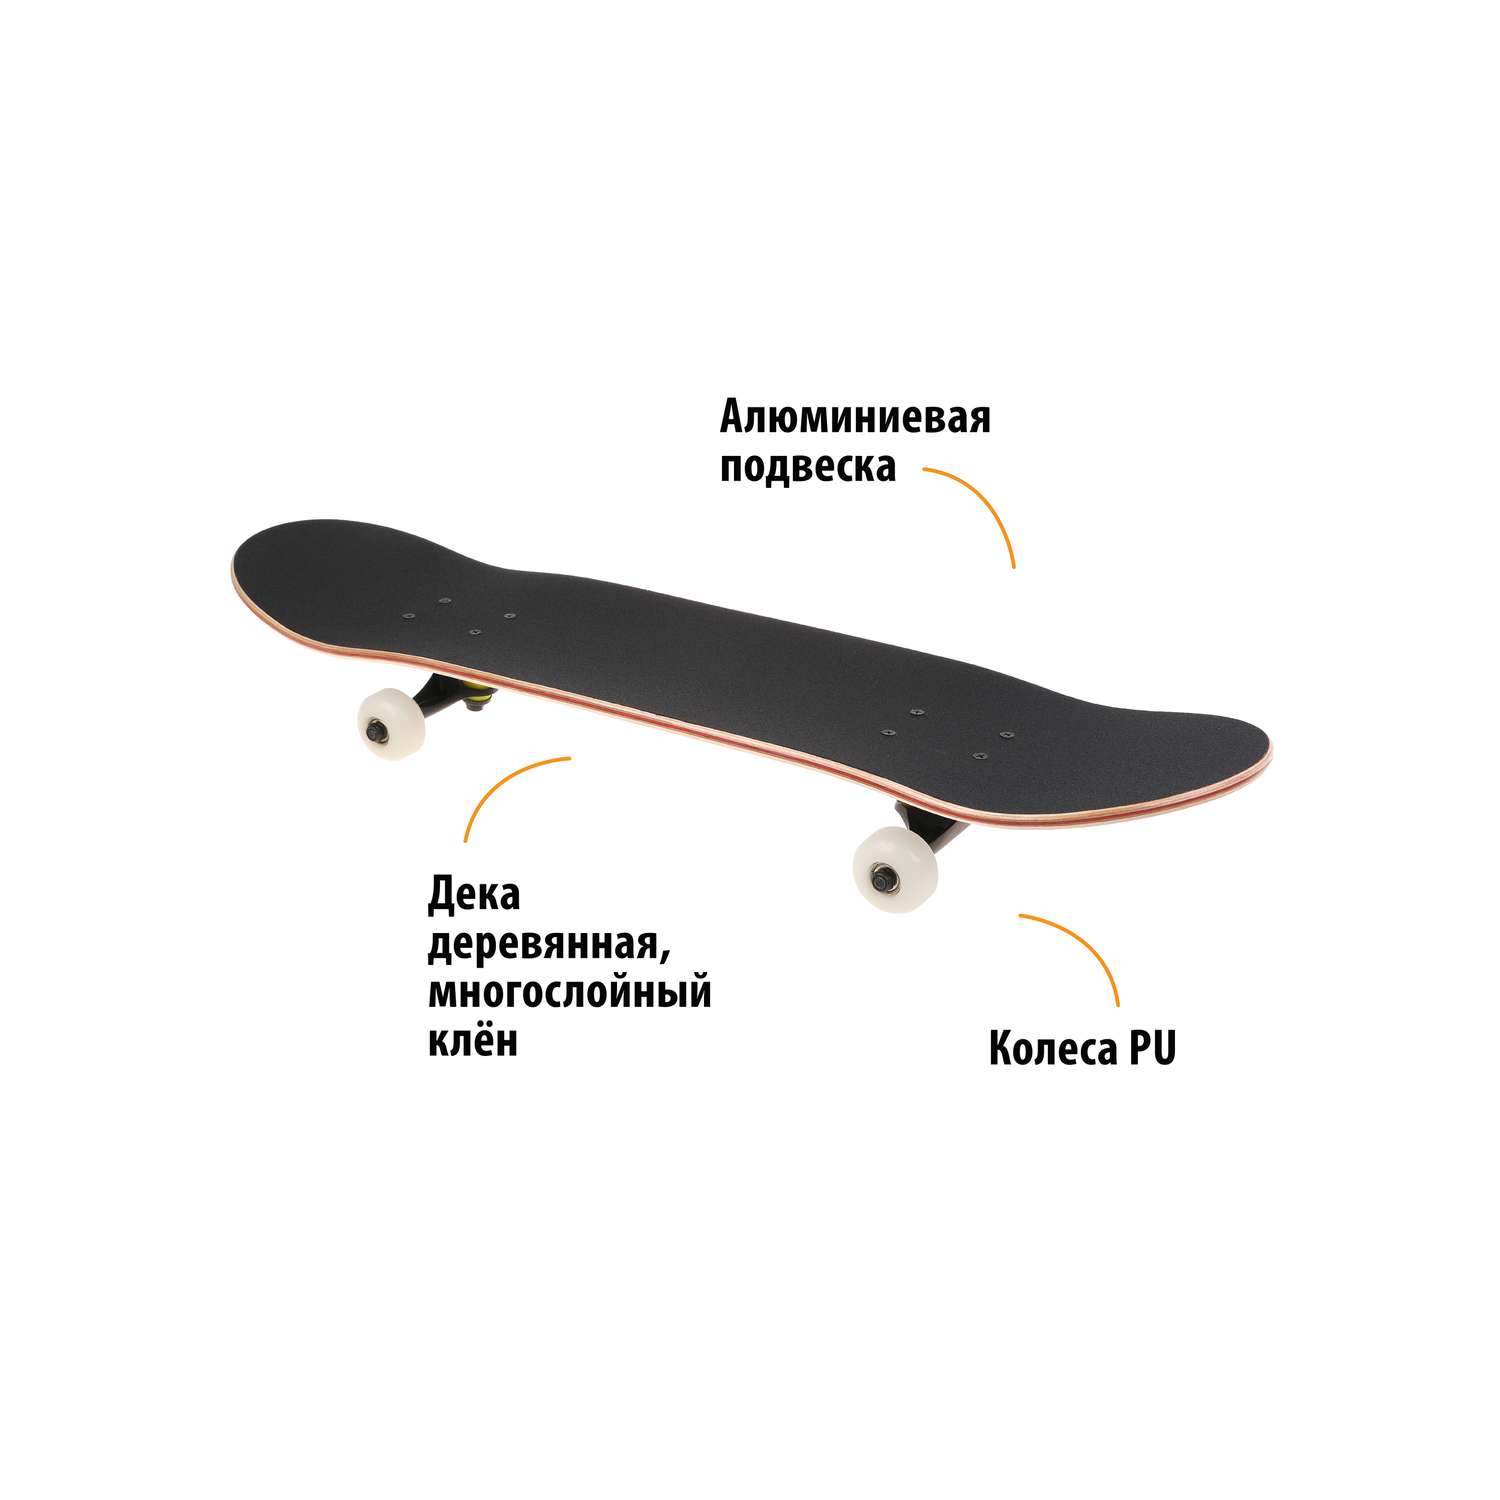 Скейтборд X-Match дека клён с наждачным покрытием 80*20 PU колеса подвеска алюмин. - фото 2